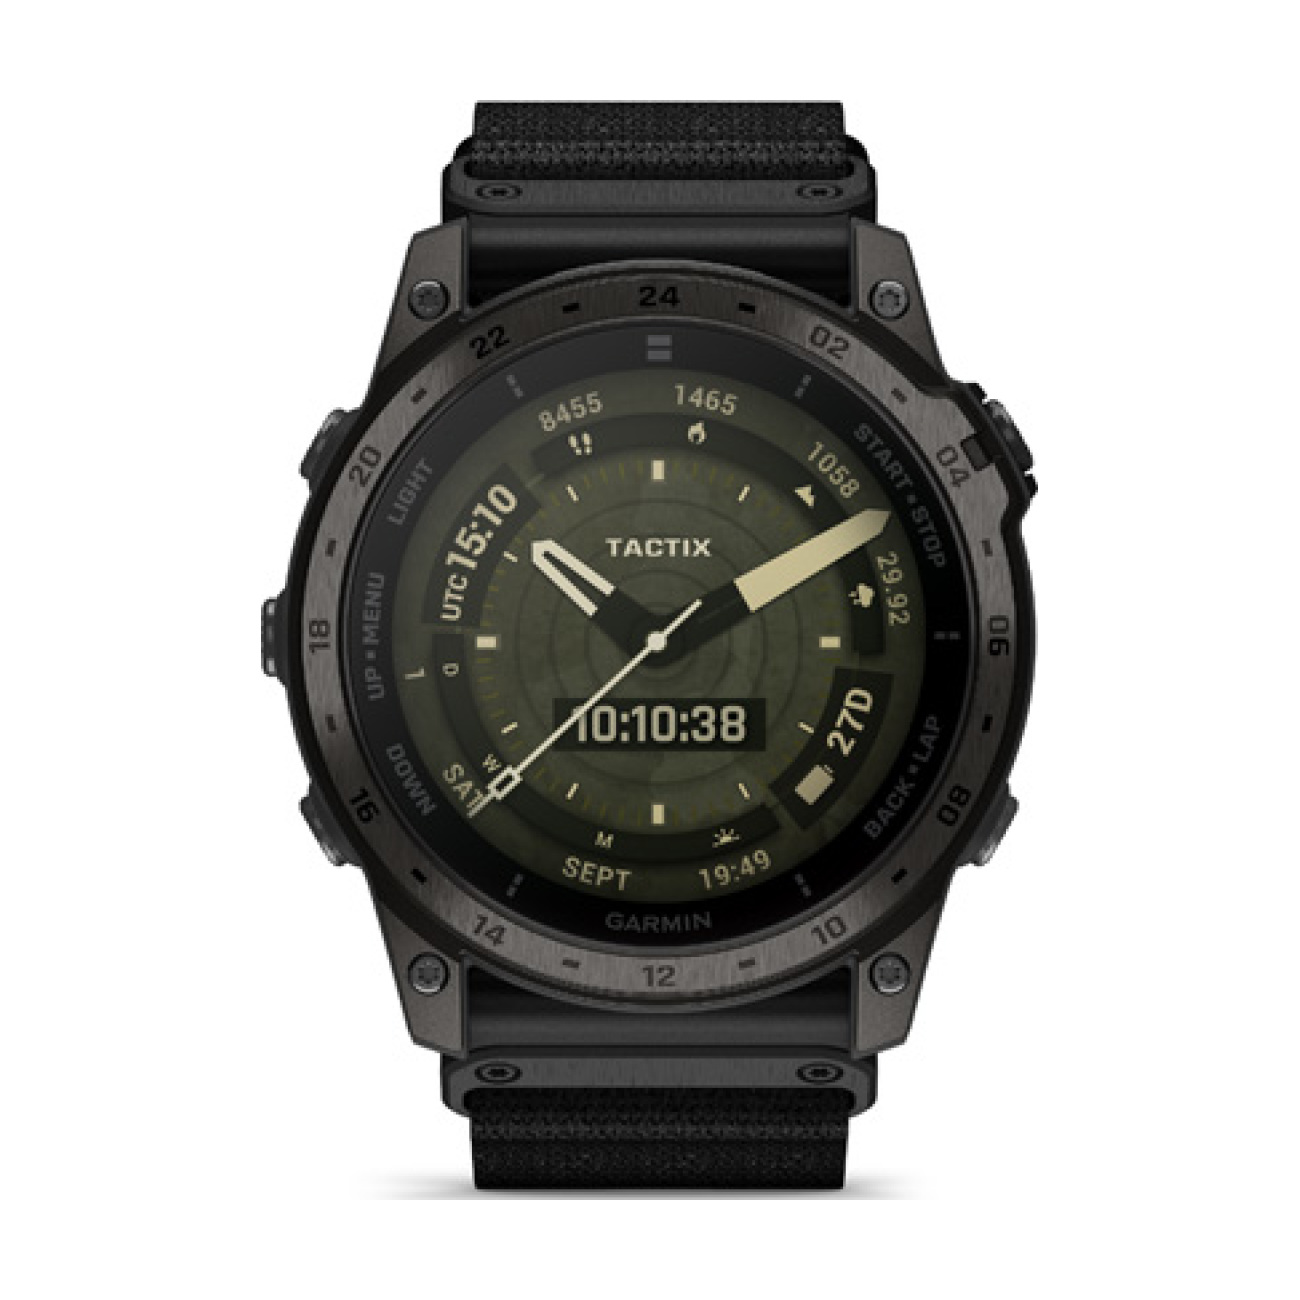 Levně GARMIN chytré hodinky - TACTIX 7 AMOLED - černá